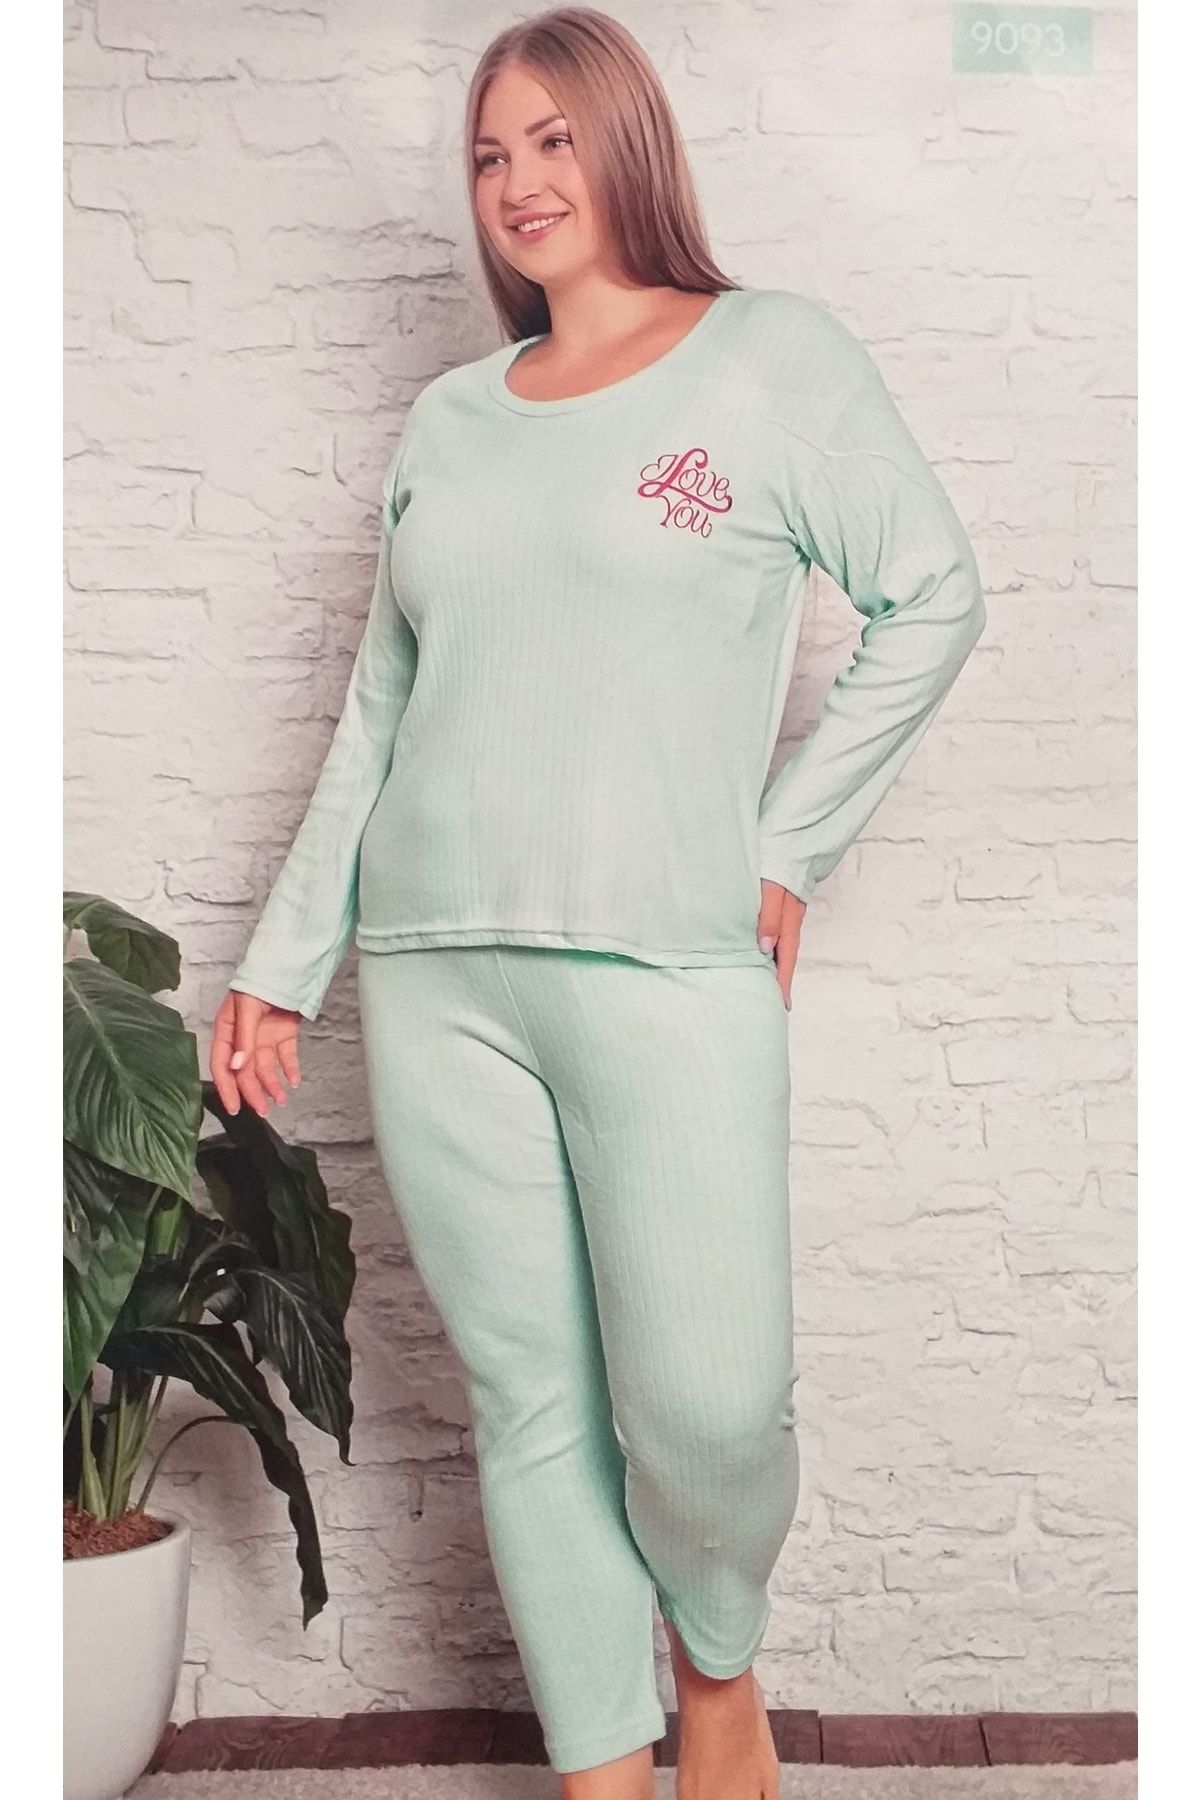 Rüyam Büyük Beden Kışlık Pijama Takımı Yeşil